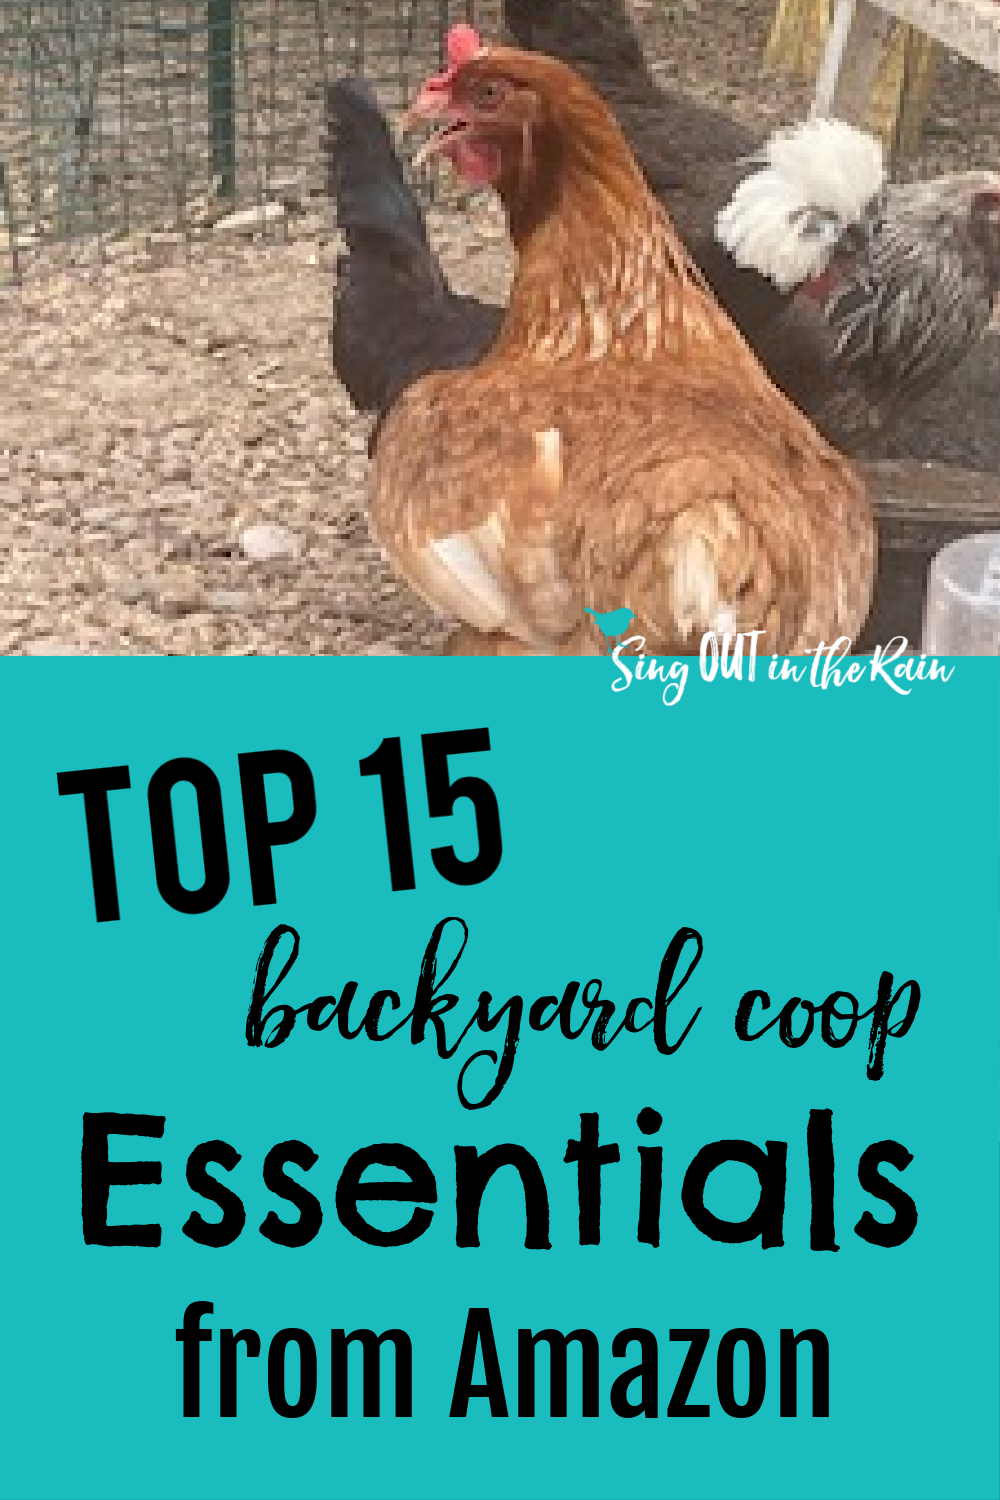 TOP 15 Backyard Coop Essentials on Amazon